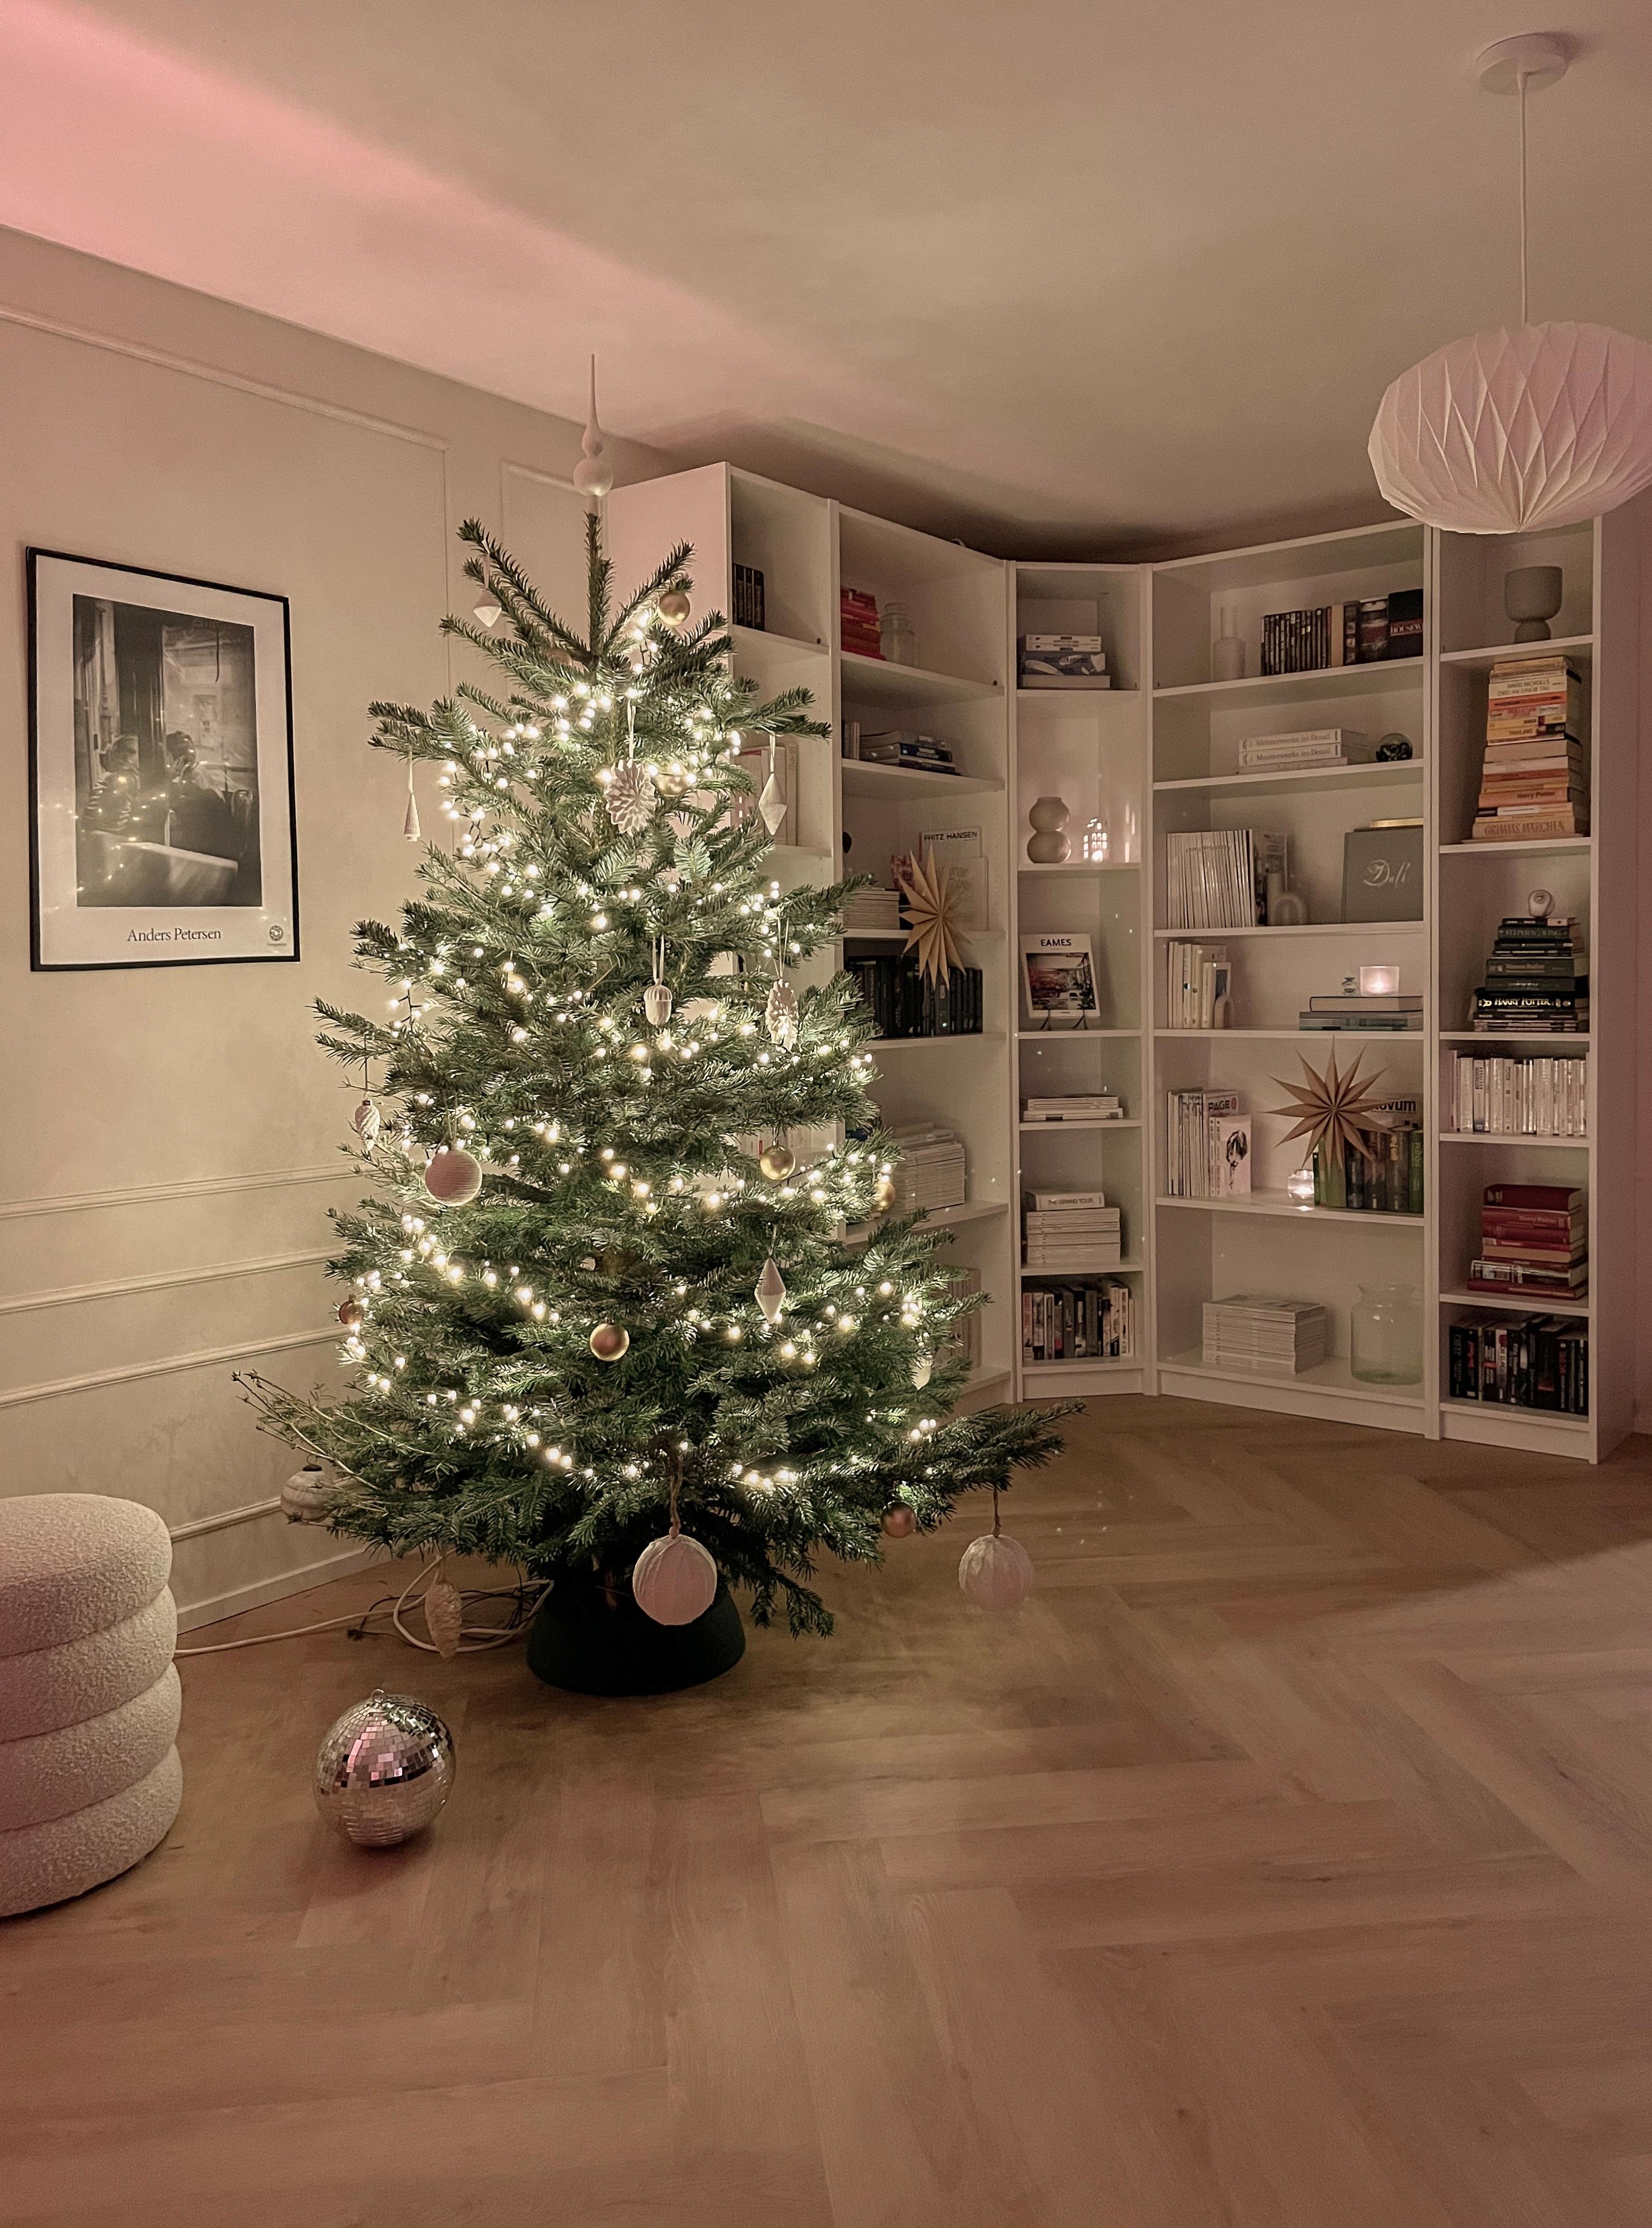 Unser erstes #weihnachten im neuen Haus! #weihnachtsdeko #tannenbaum #baumschmuck #weihnachtsbaum #lichthaus #lichter 